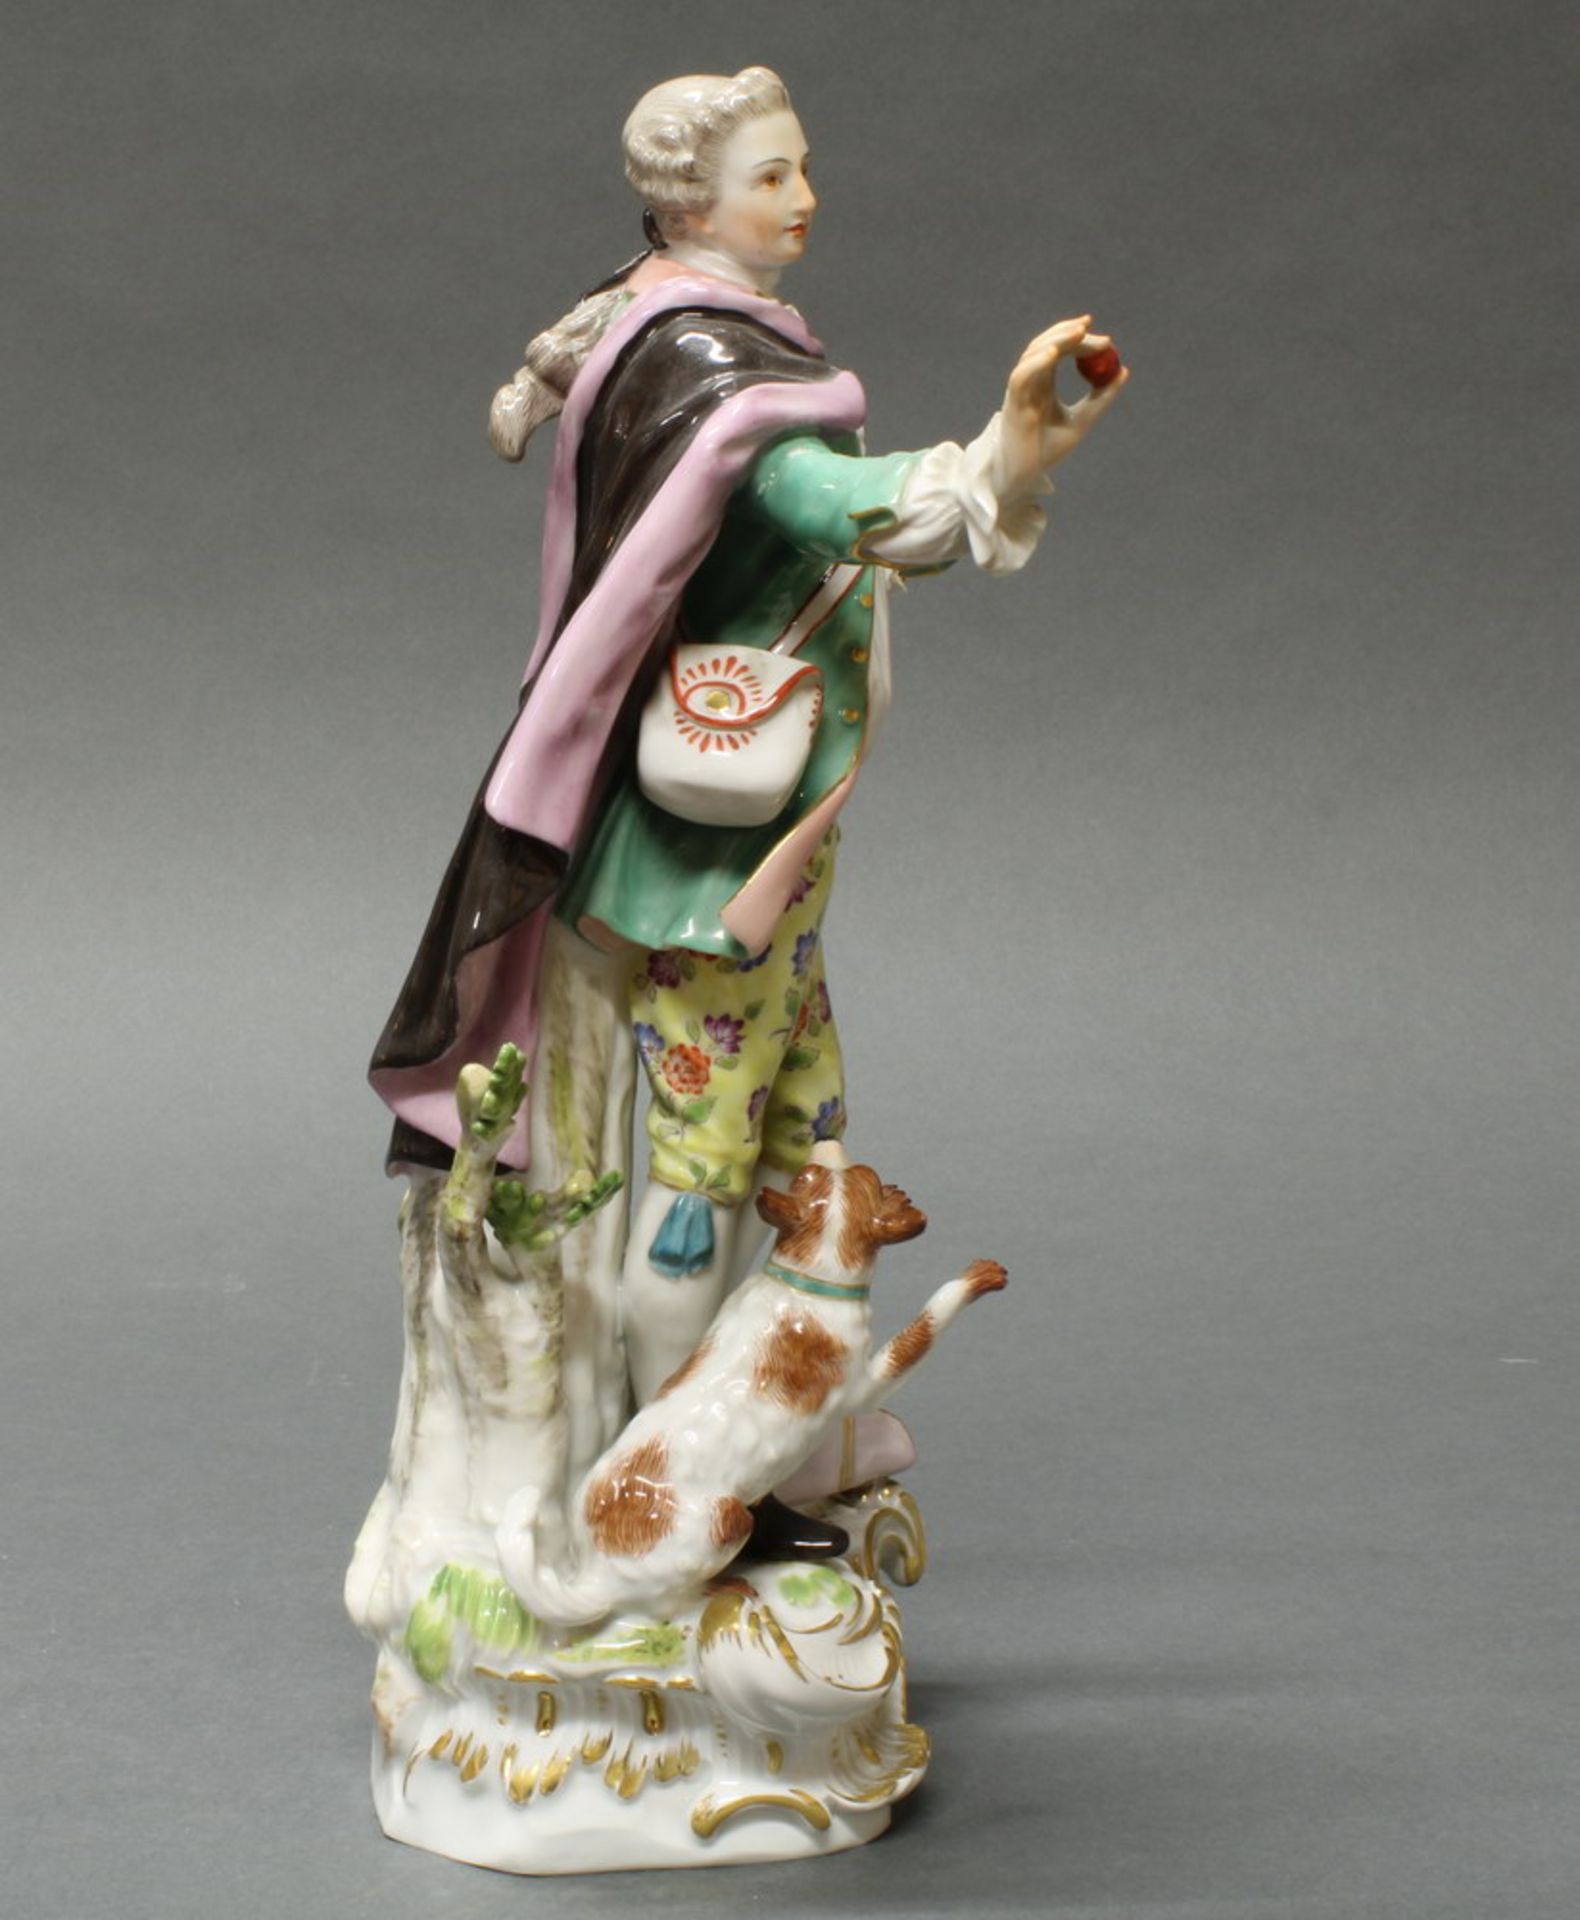 Porzellanfigur, "Schäfer mit Hund", Meissen, Schwertermarke, 3. Wahl, polychrom und goldstaffiert, - Image 4 of 4